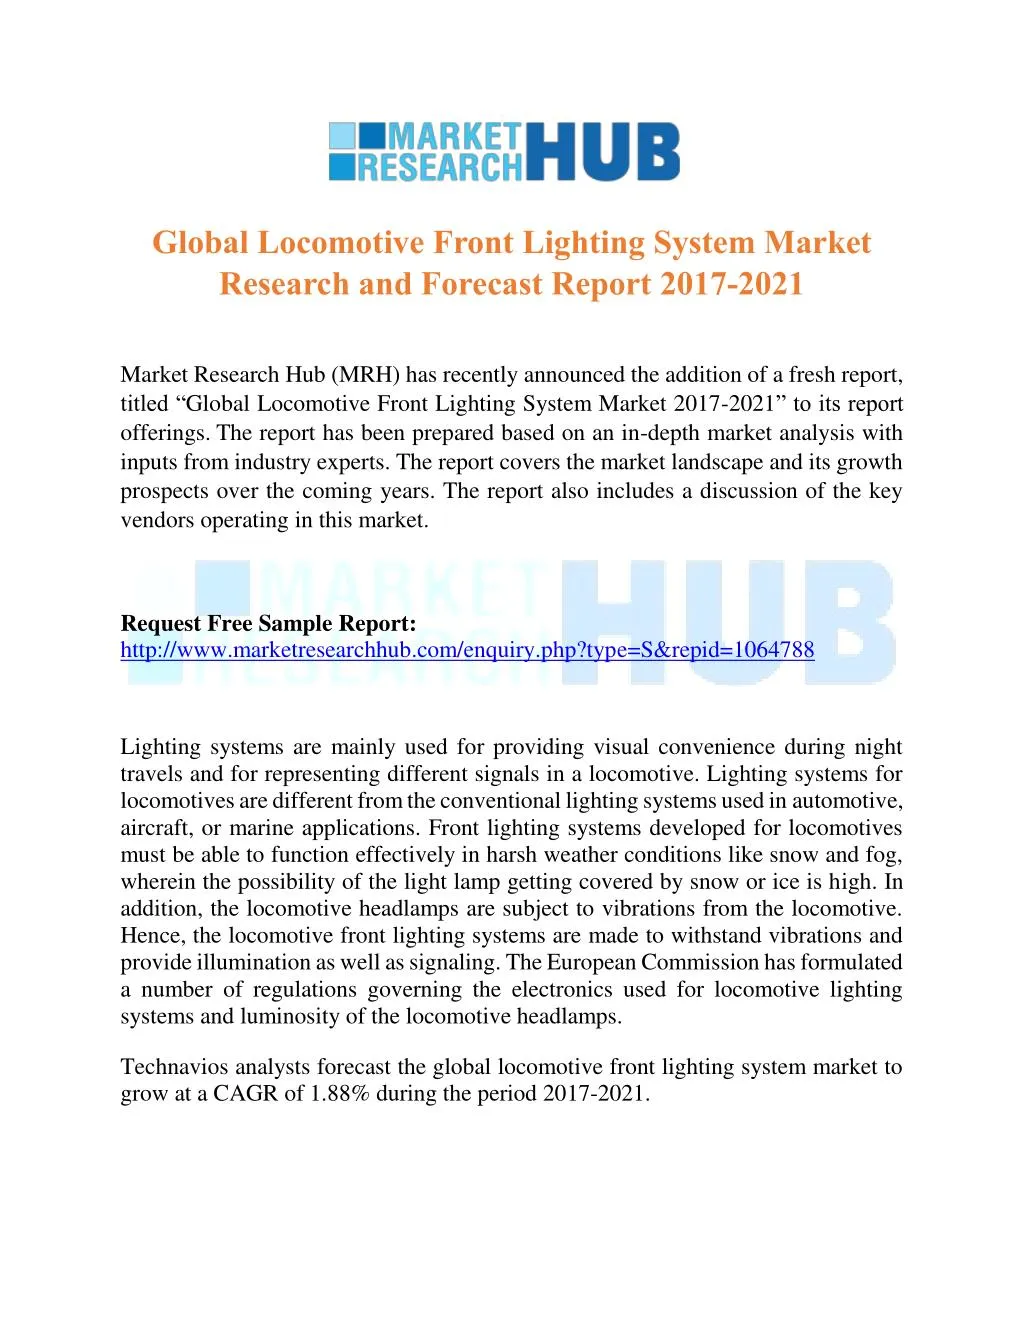 global locomotive front lighting system market